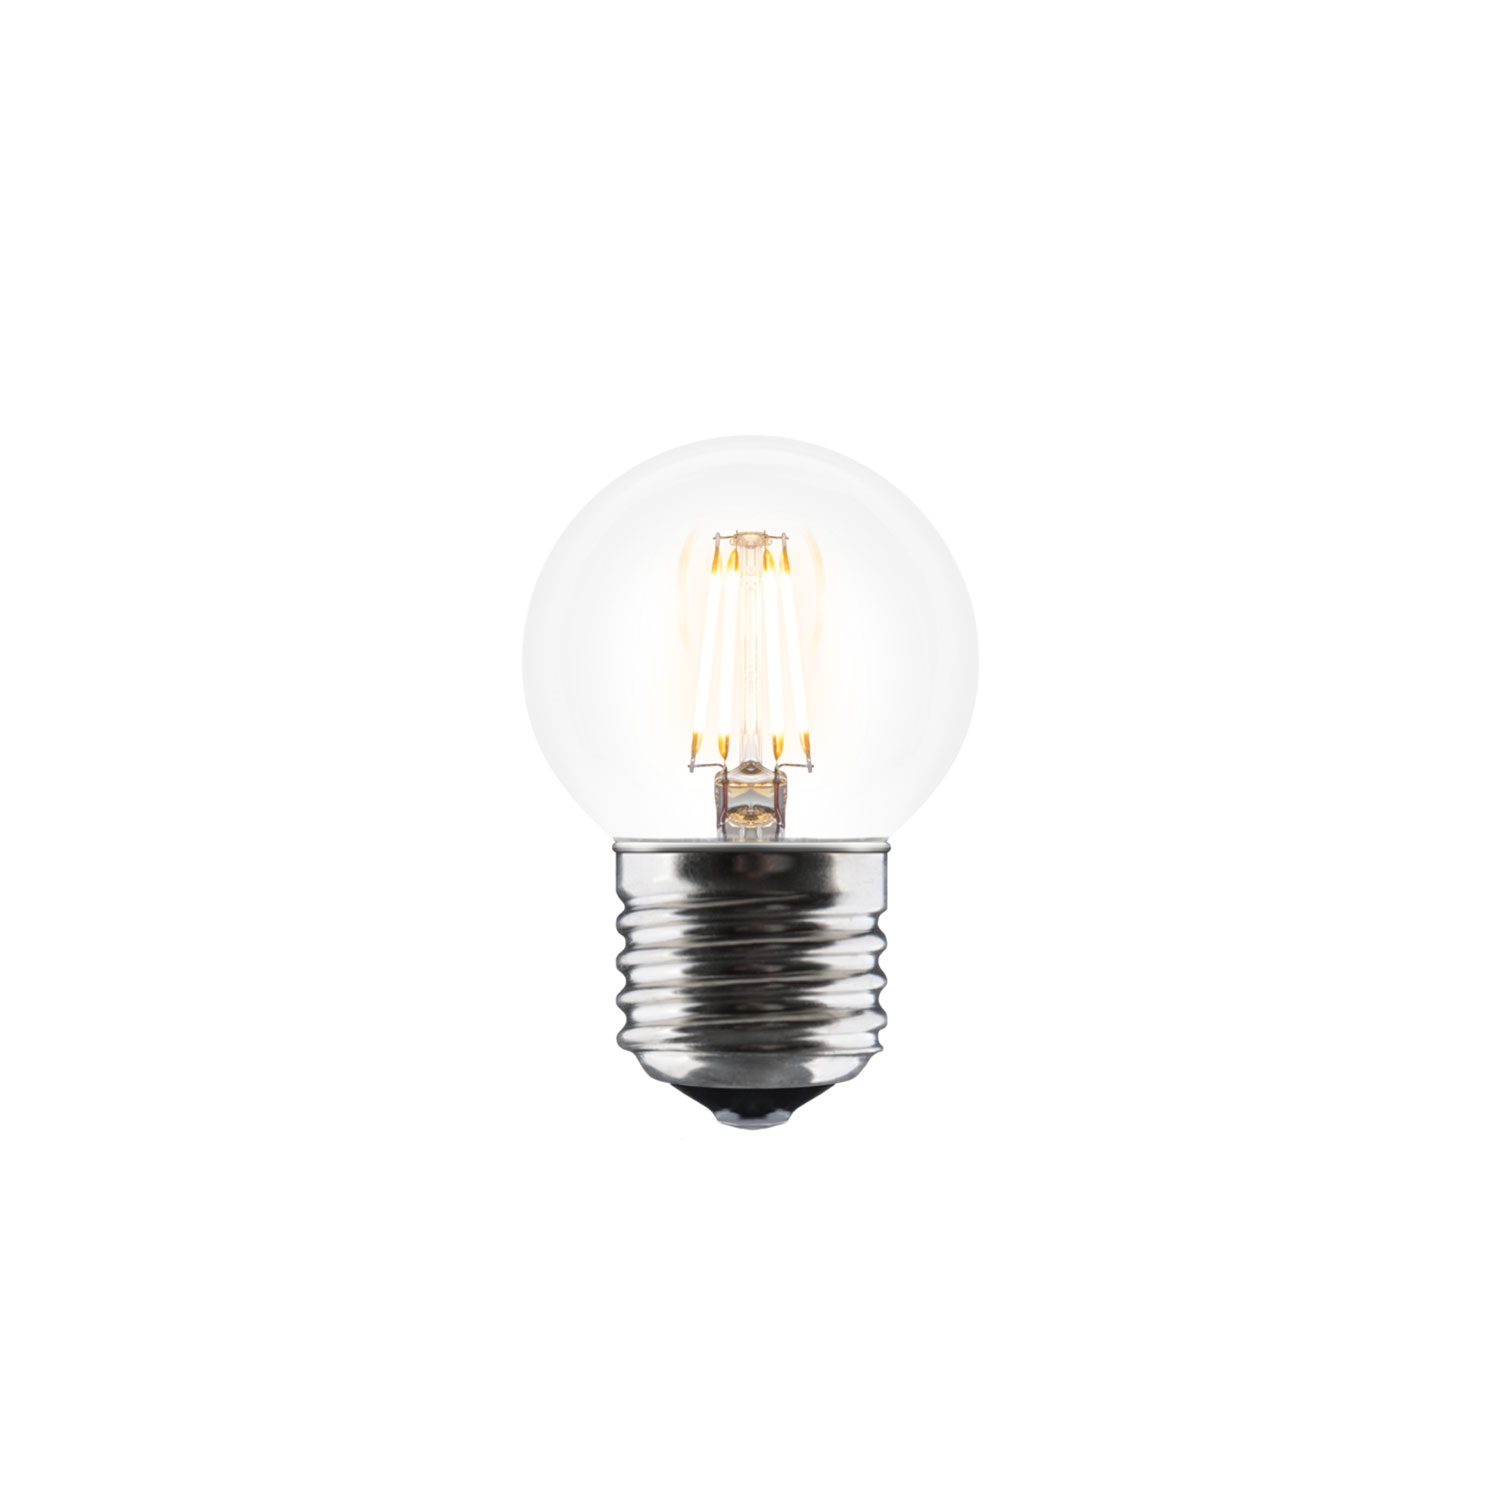 Idea Bulb E27 40 Umage @ RoyalDesign